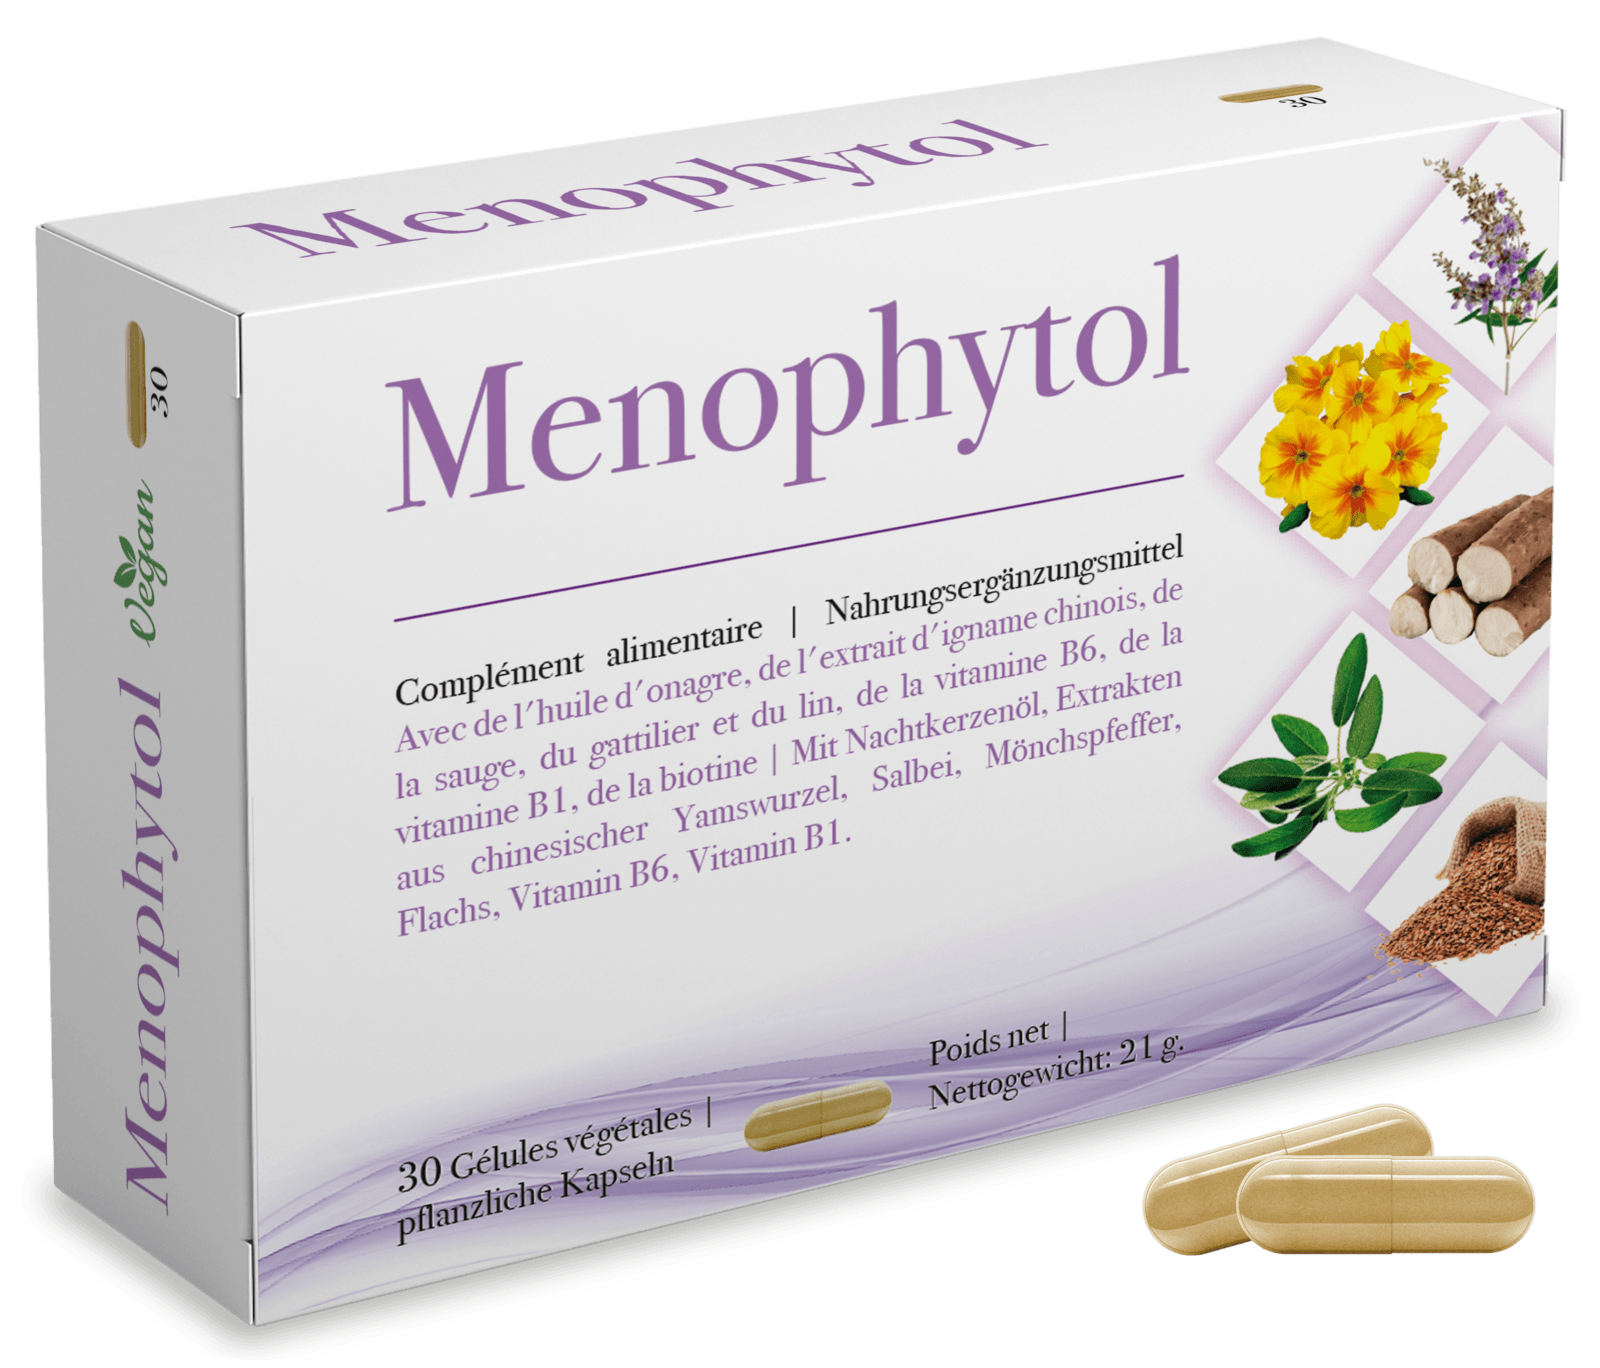 Menophytol Test, Wir recherchieren und berichten Ihnen von diesem Produkt